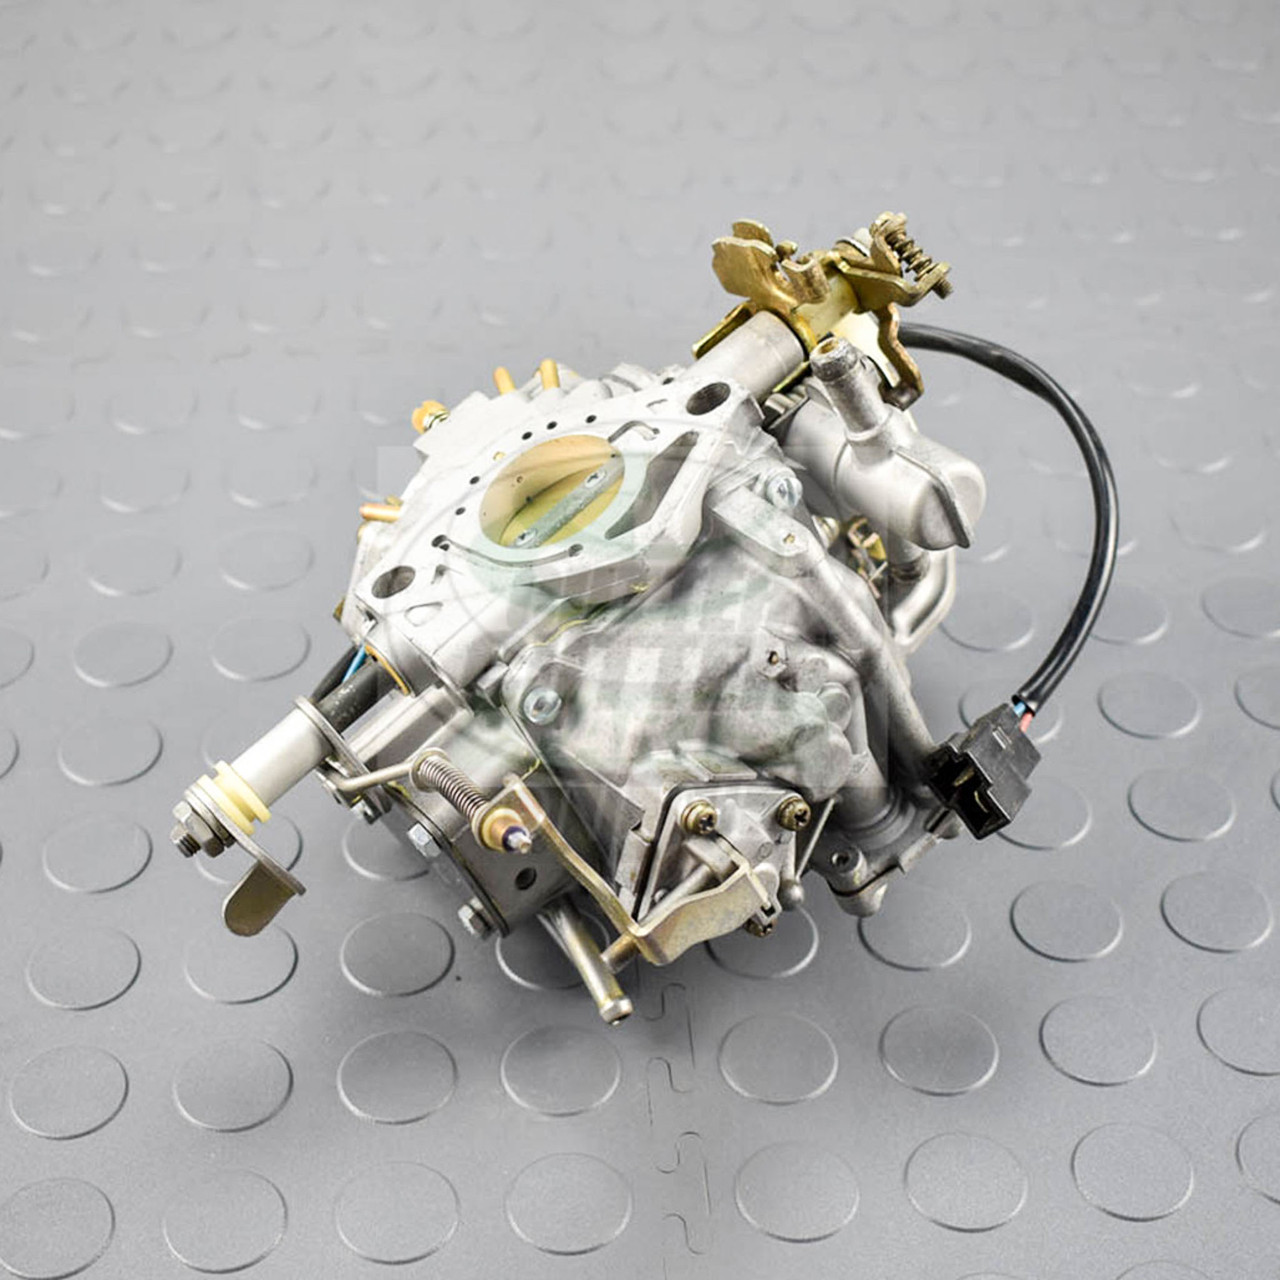 Serviced Rebuilt Carburetor - Fits Toro: 94-5288